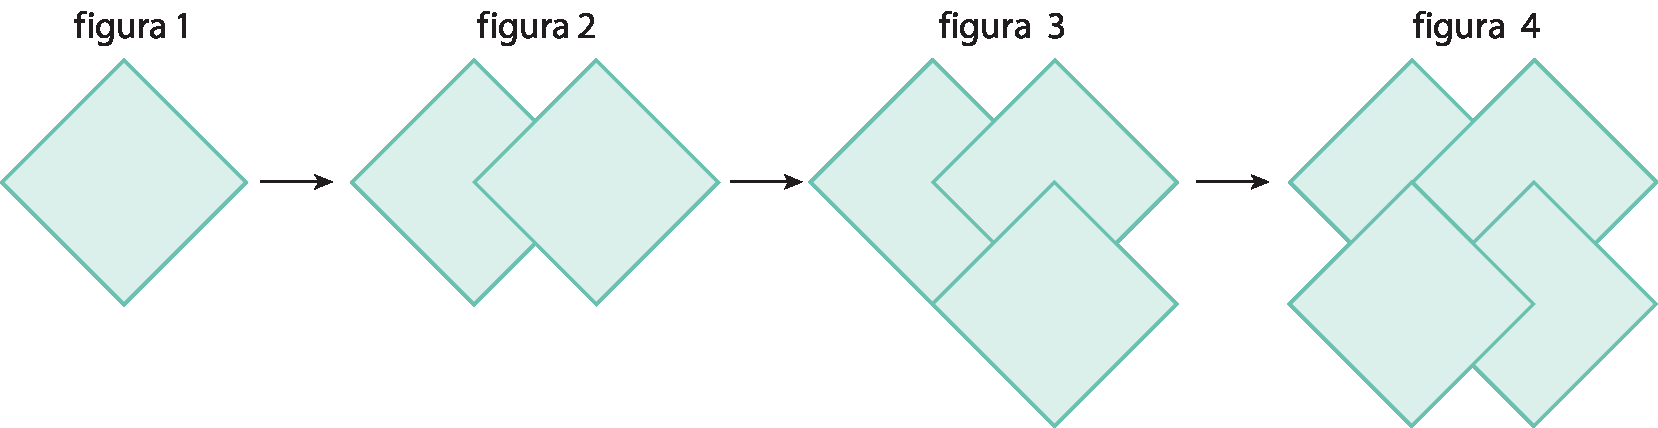 Ilustração. A figura 1 apresenta 1 quadrado esverdeado inclinado. A figura 2 continua a figura 1 apresentando mais um quadrado esverdeado inclinado, com o vértice esquerdo dele sobrepondo o vértice direito do quadrado da figura 1. A figura 3 continua a figura 2 apresentando mais um quadrado esverdeado inclinado, com o vértice superior dele sobrepondo o vértice inferior do quadrado adicionado na figura 2. A figura 4 continua a figura 3 apresentando mais um quadrado esverdeado inclinado, com o vértice direito dele sobrepondo o vértice esquerdo do quadrado adicionado na figura 3 e, também, com o vértice superior dele sobrepondo o vértice inferior do quadrado da figura 1.